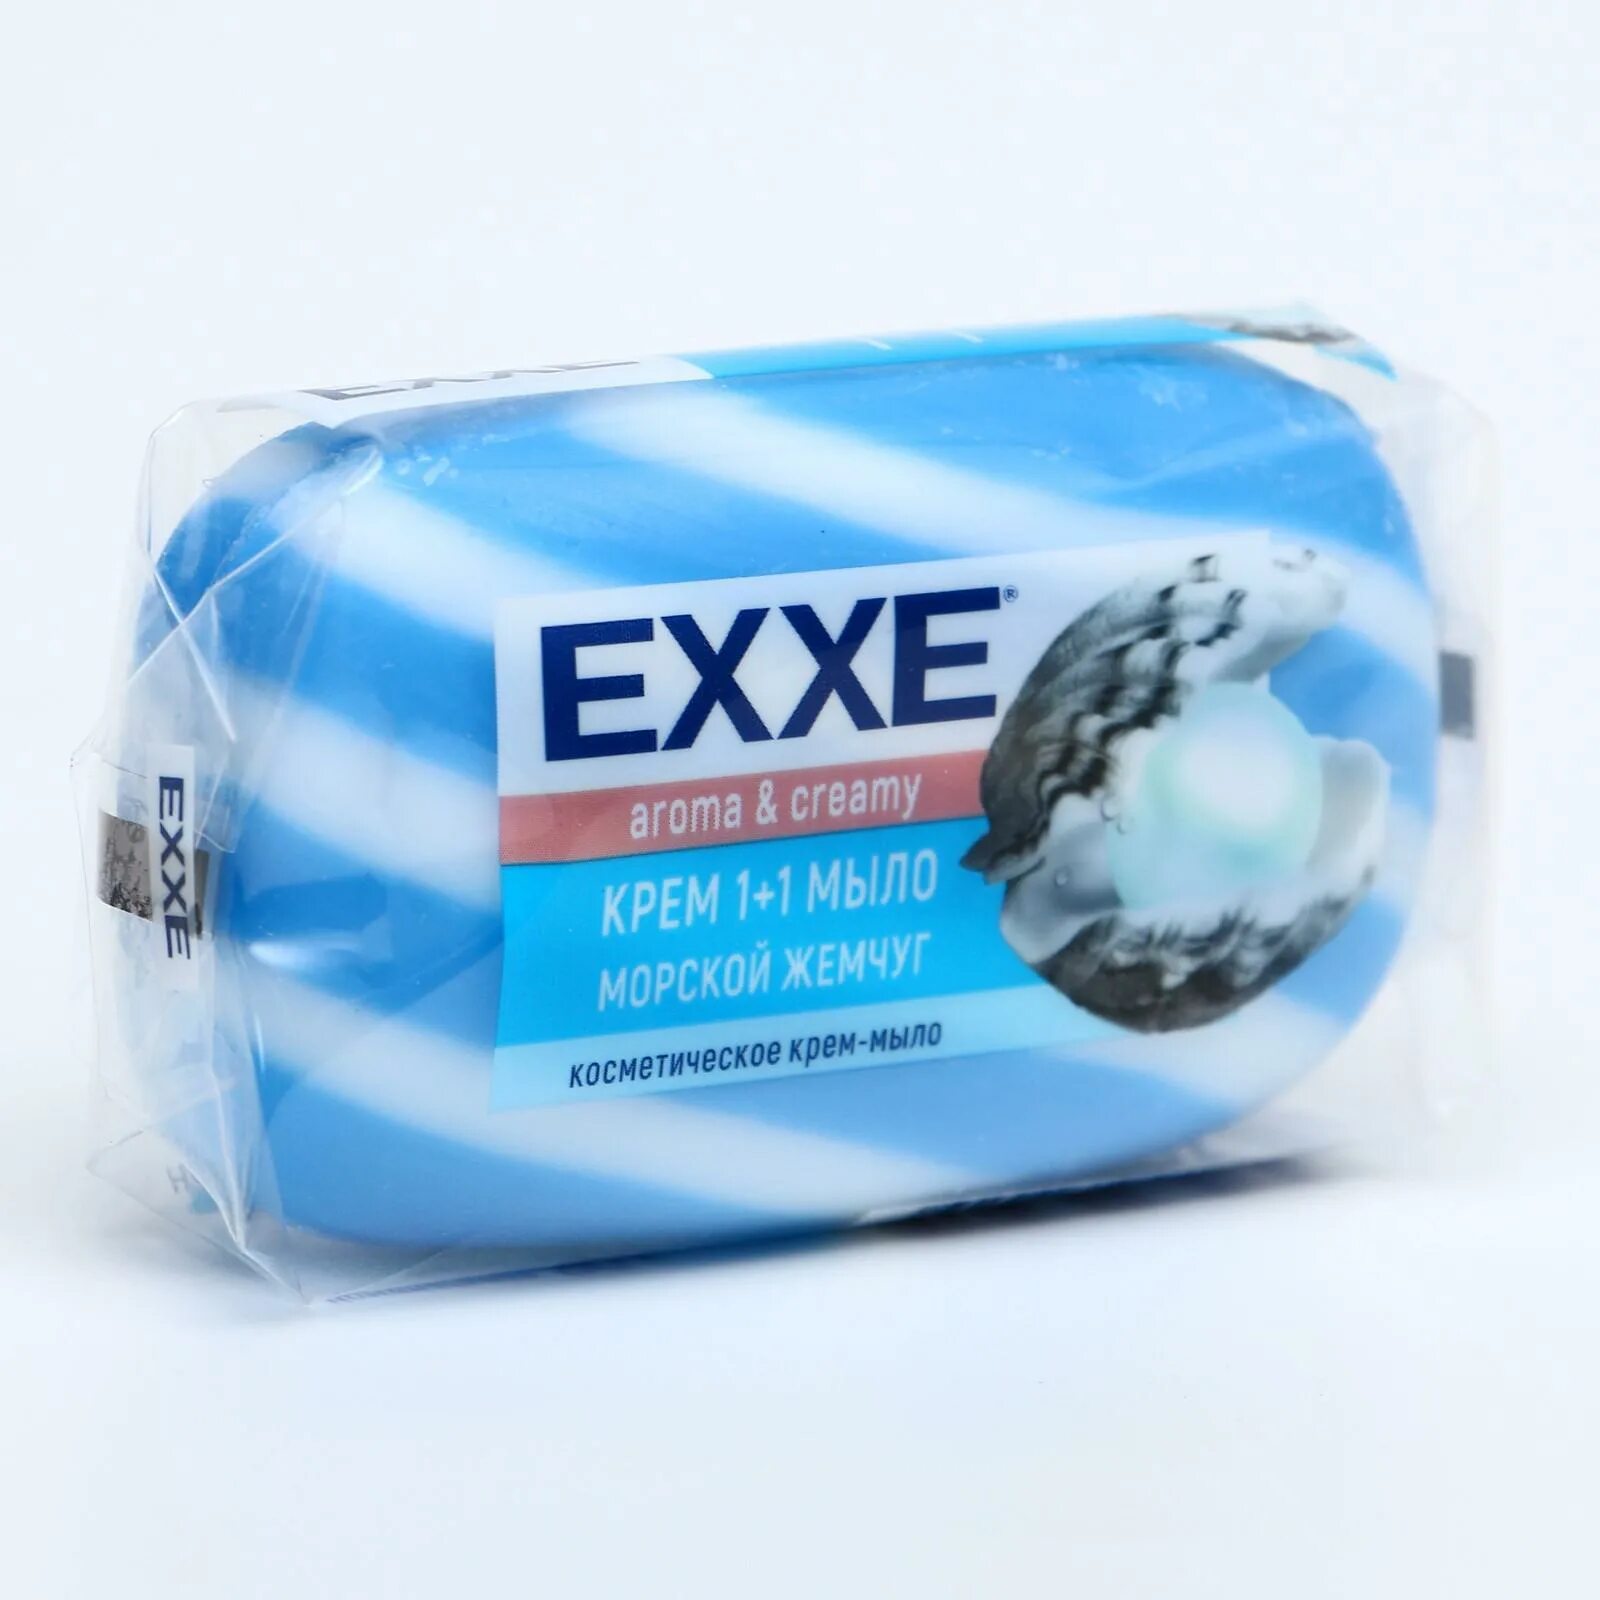 Крем- мыло туалетное Exxe 1+1 80г морской жемчуг (синее) полосатое 6299. Крем+мыло Exxe 1+1 "морской жемчуг" 1шт*80г (синее) полосатое одиночное. Крем-мыло туалетное 80г Exxe 1+1 морской жемчуг. Мыло крем туалетное морской жемчуг синее полосатое 80г Exxe.